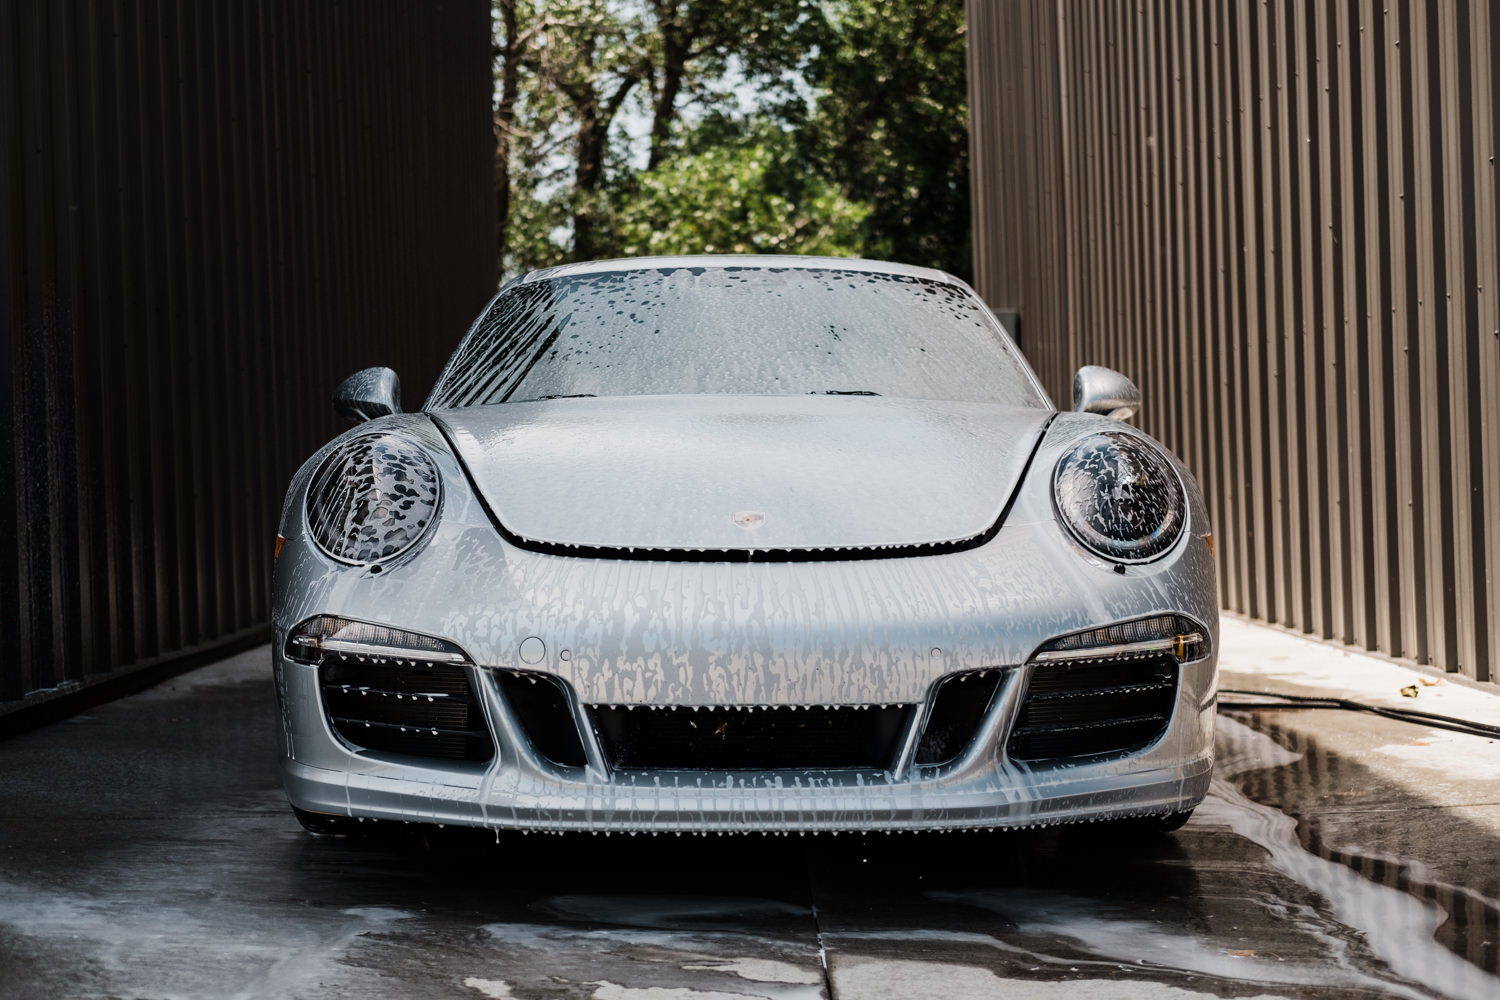 Porsche 911 - Porsche - Wichita Clear Bra - XPEL - XPEL Ultimate - Ceramic Pro - Ceramic Coating - Car Detailing - Porsche 911 GTS-100.jpg